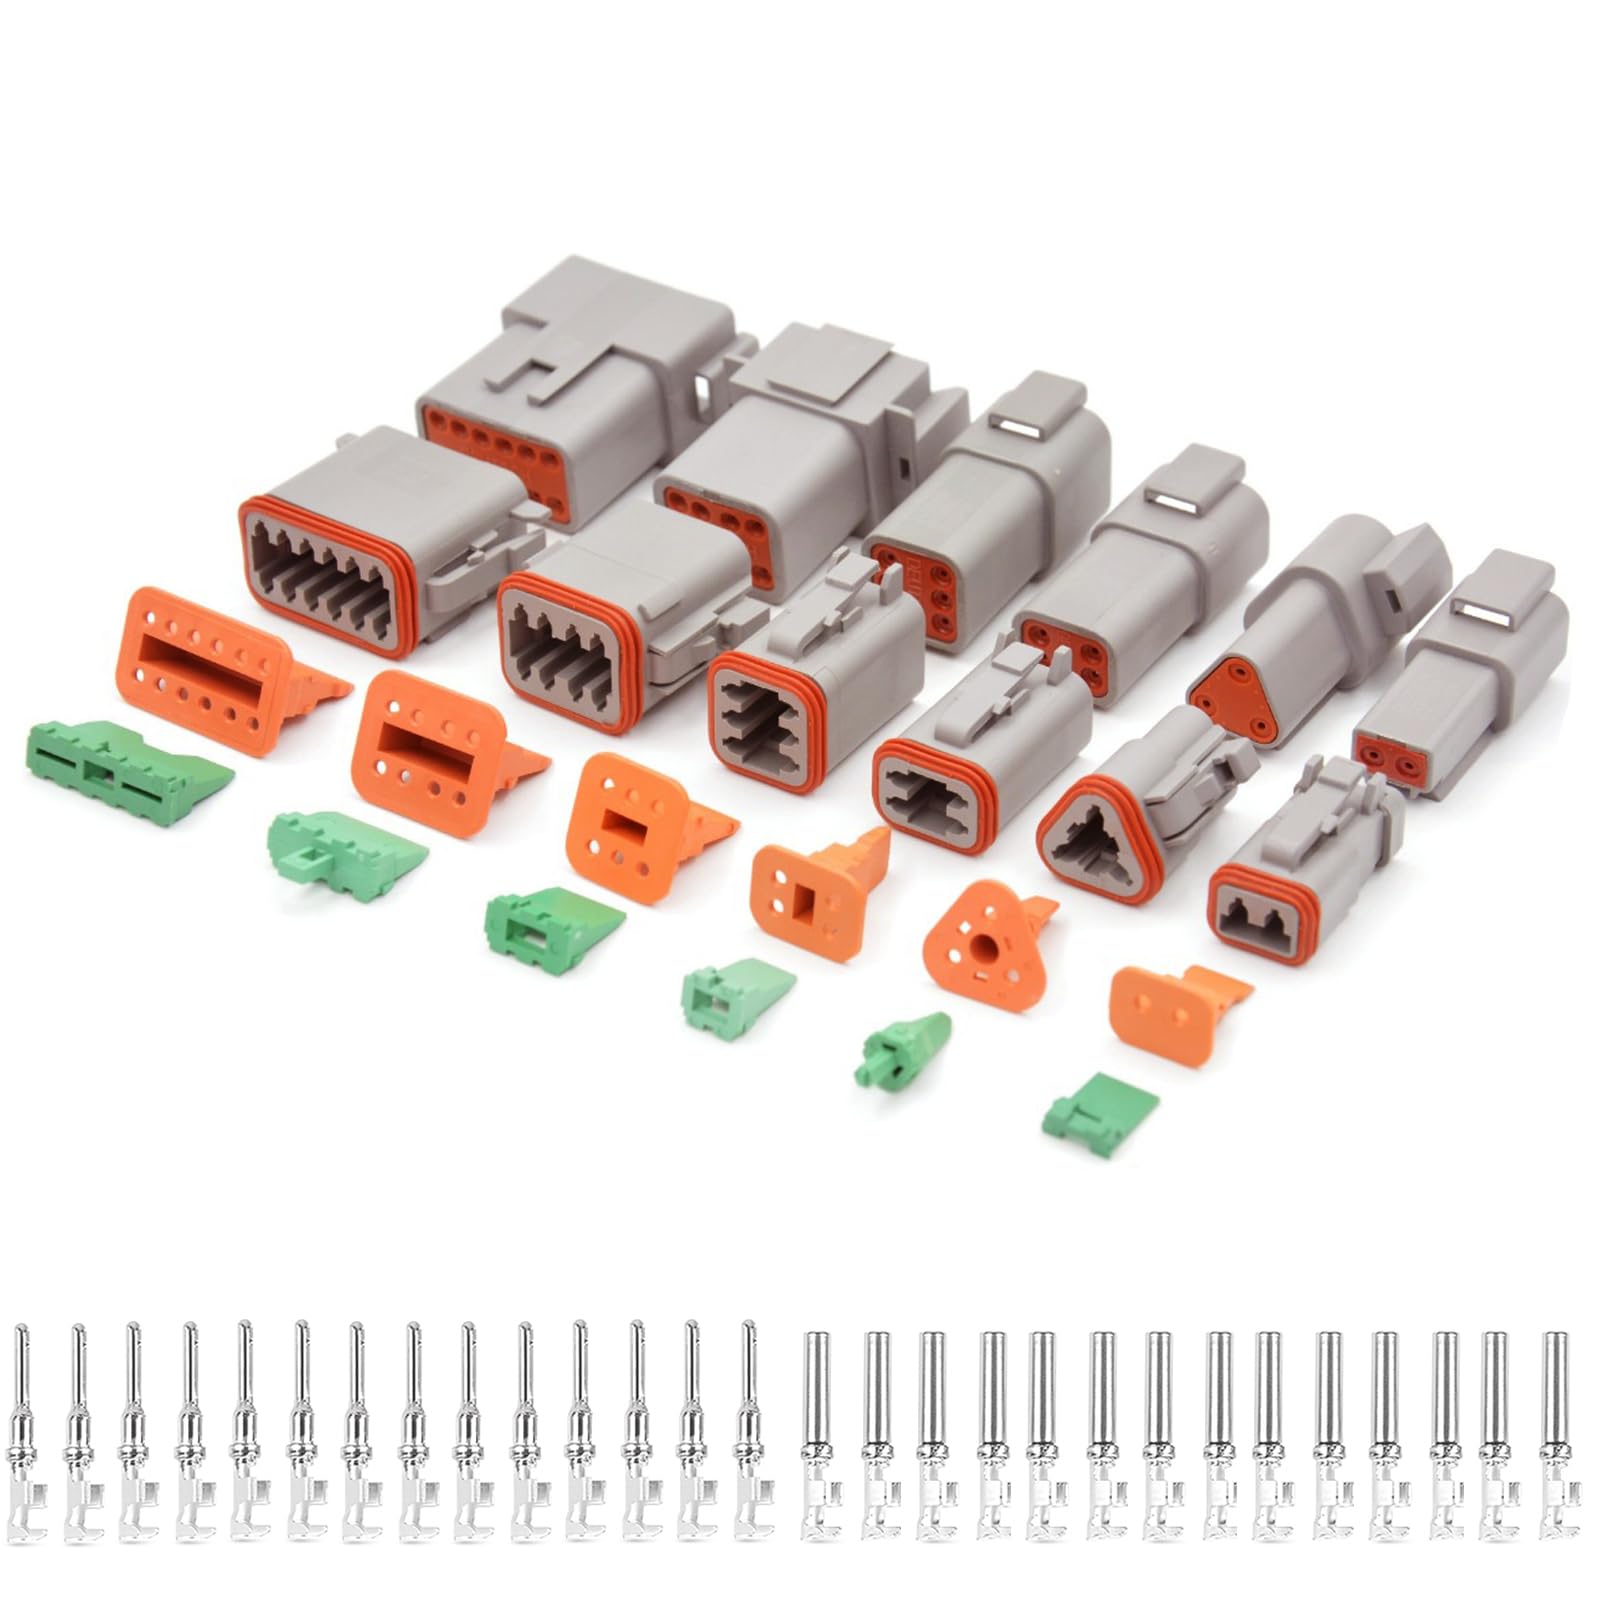 DT Stecker Set,6 Sätze Kabelverbinder Wasserdicht Steckverbinder,2-, 3-, 4-, 6-, 8-, 12-polig,KFZ Stecker,Kabelstecker für Auto, Motorräder, LKW, Boot von CEMYDEYO